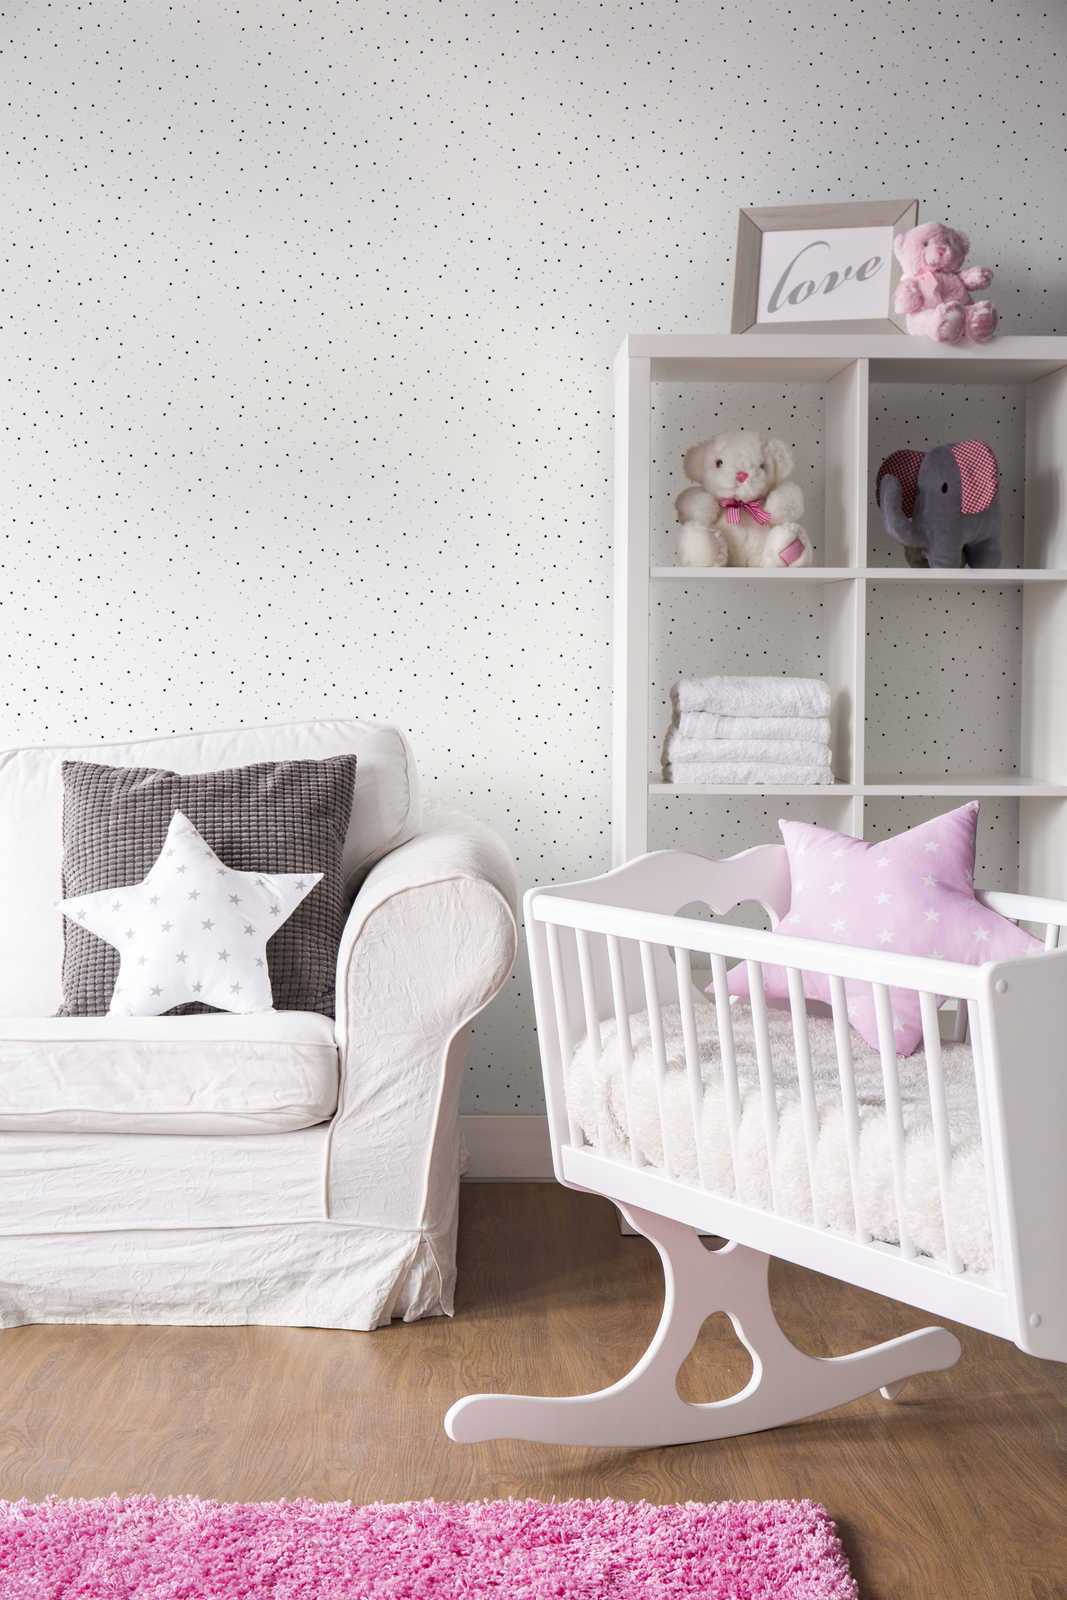             Nursery wallpaper stars - blue, white, black
        